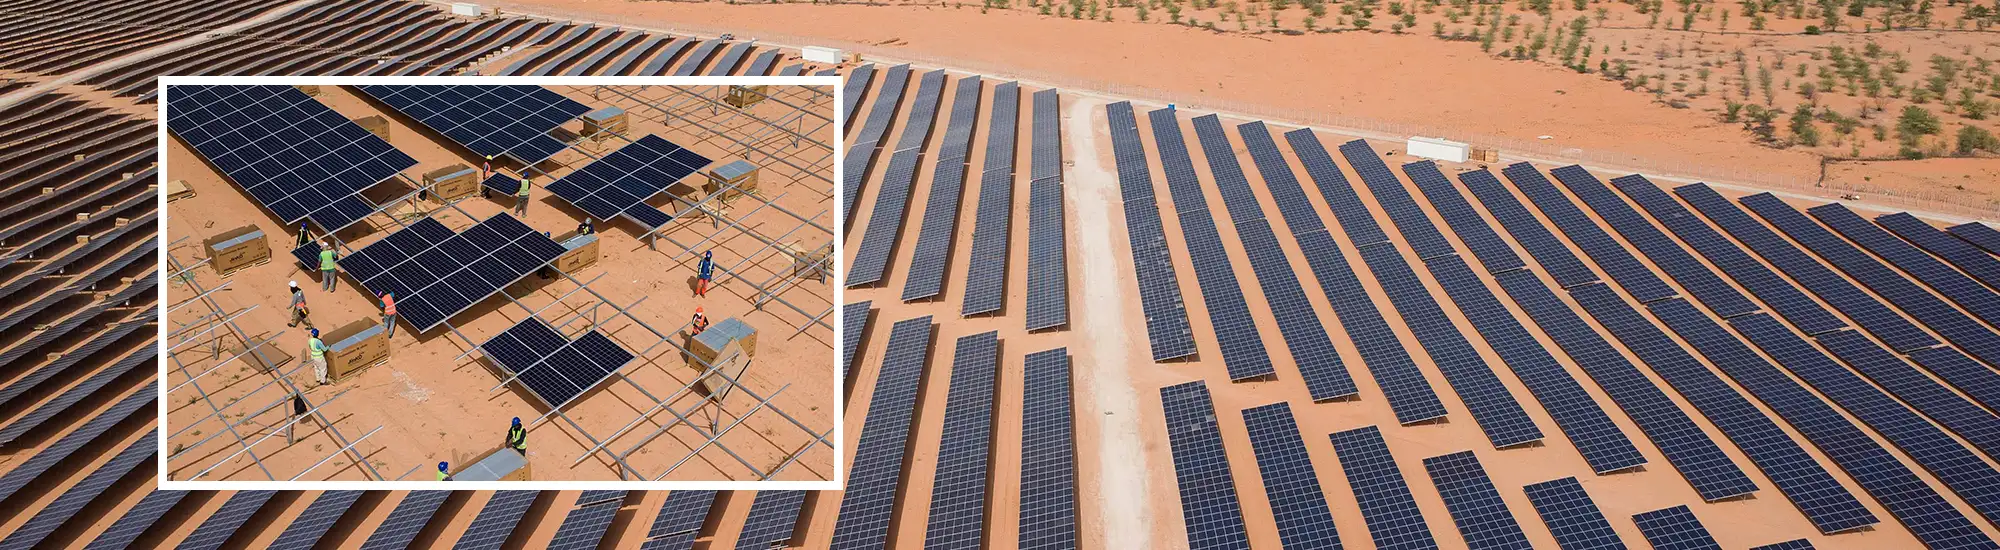 Reduction Projekt: Moderne Solar-Technologie für Mauretanien